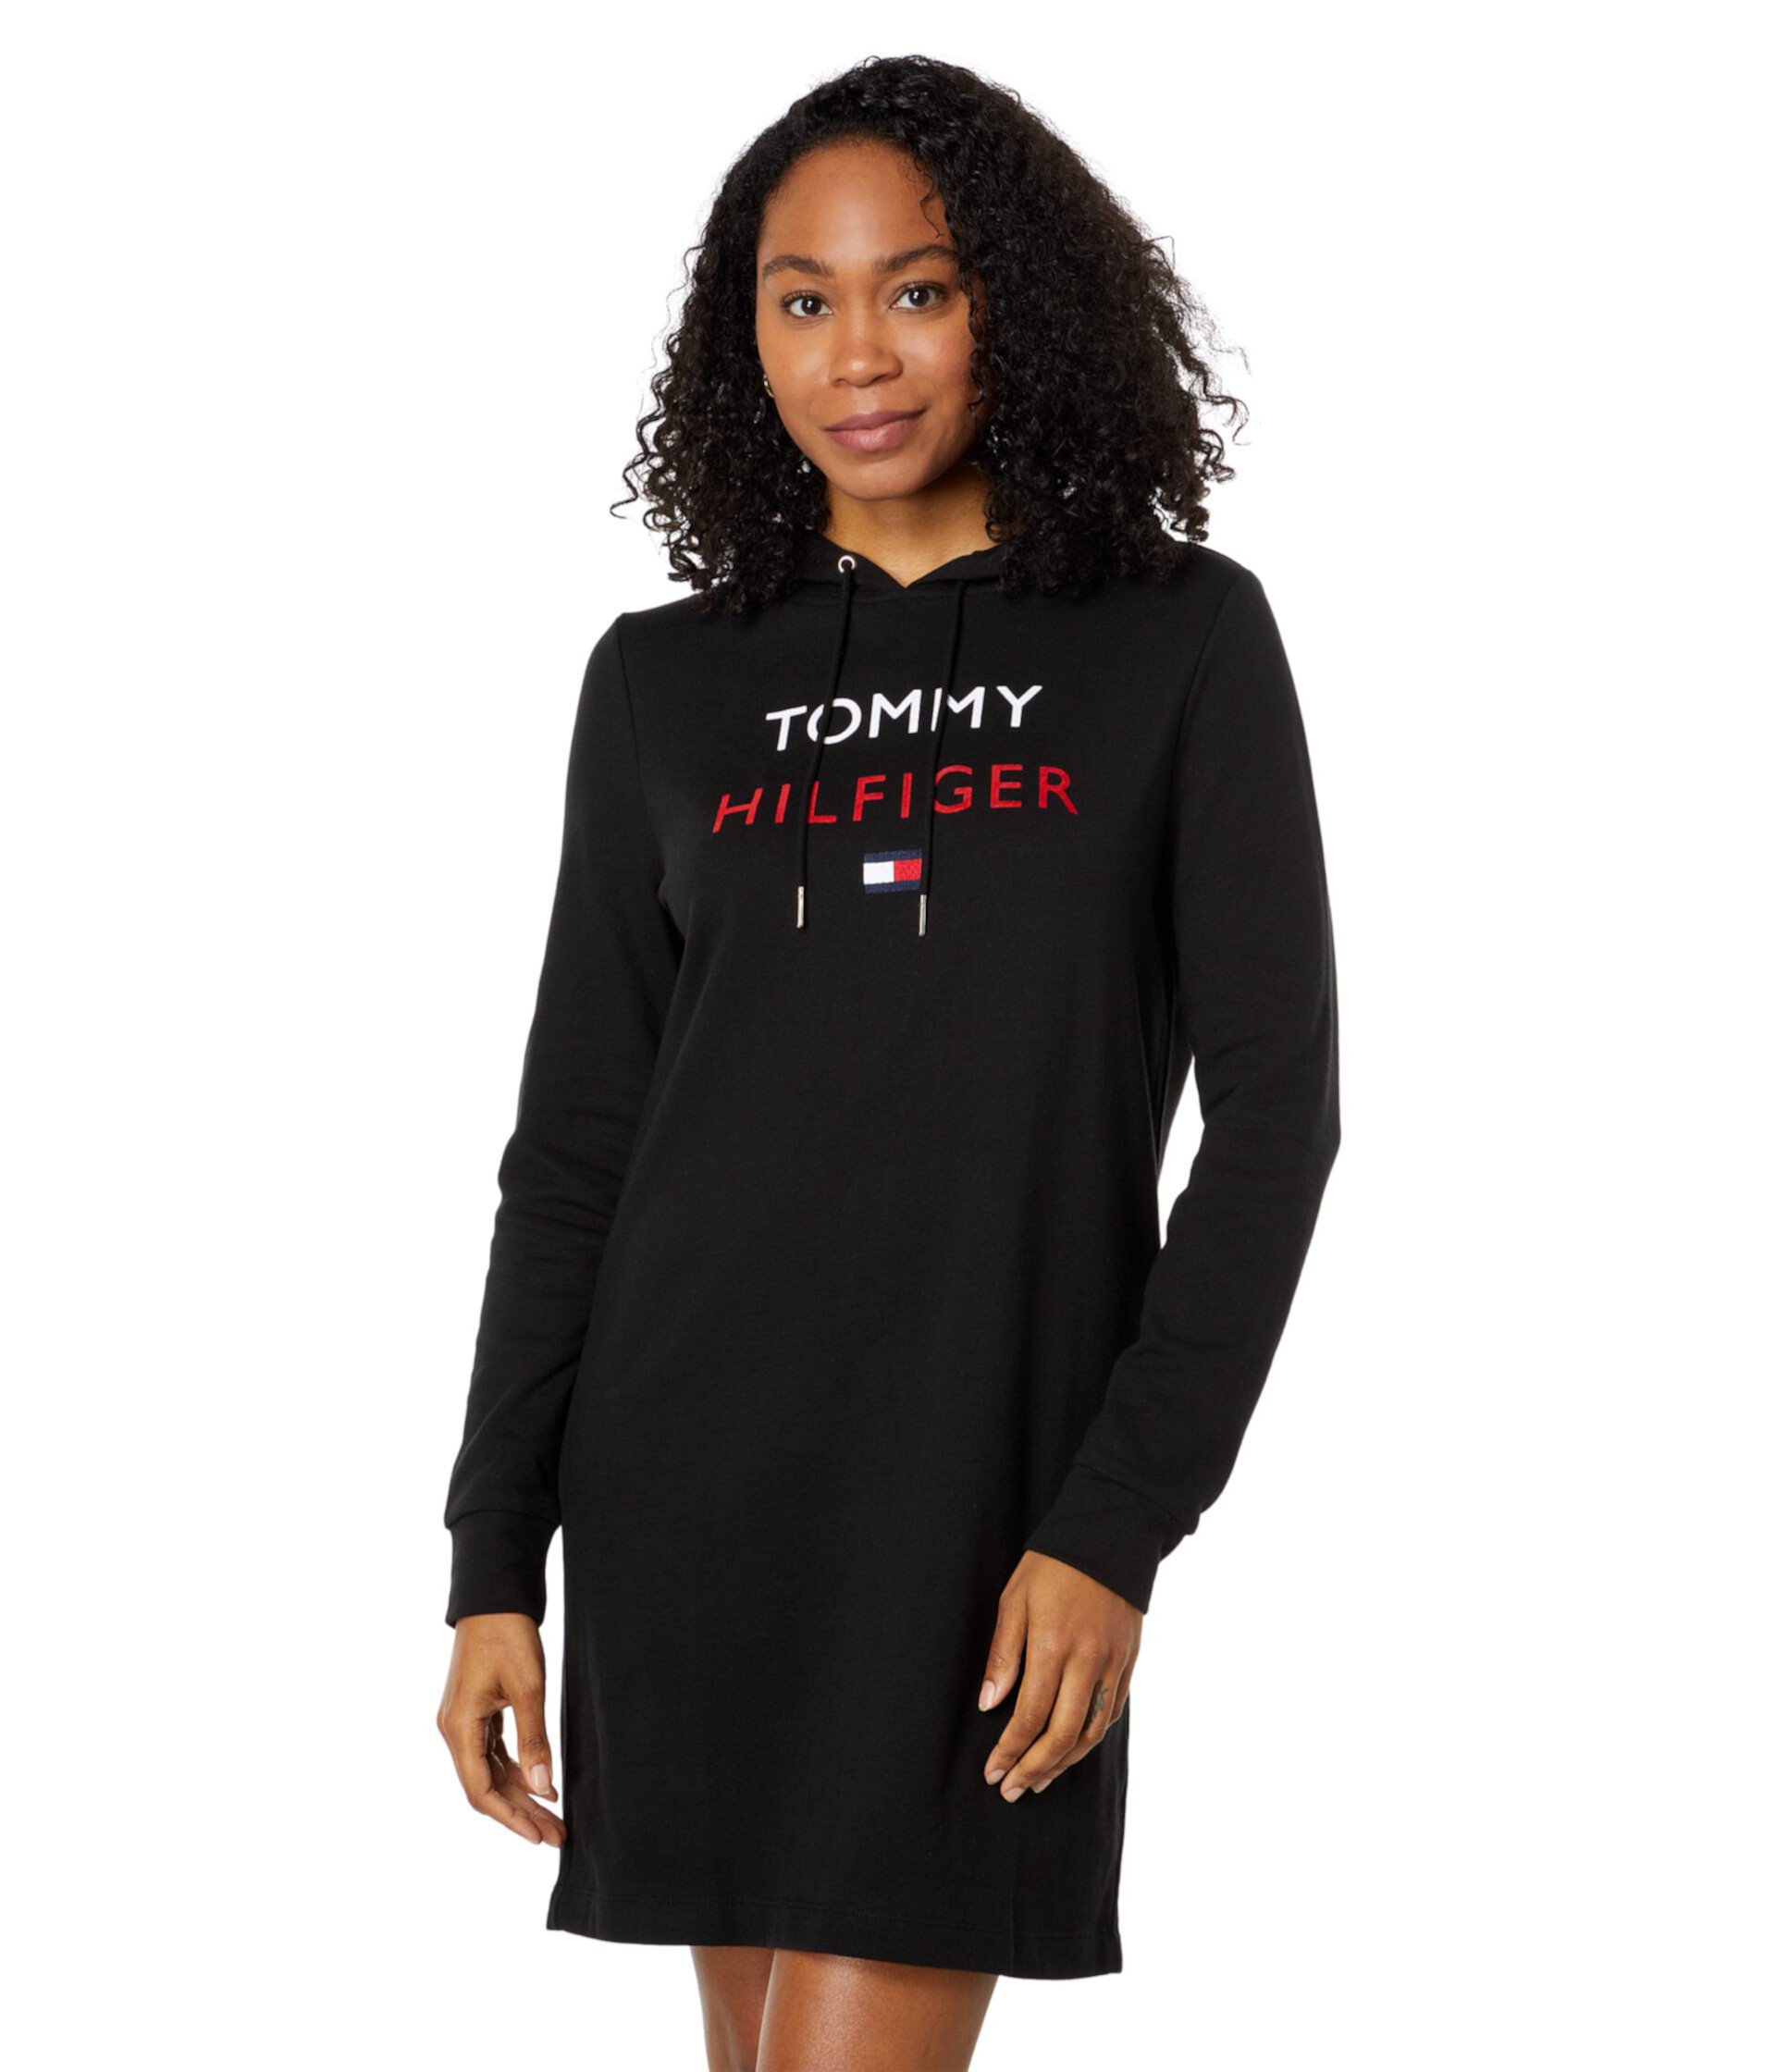 Трикотажное платье с капюшоном и логотипом Tommy Hilfiger